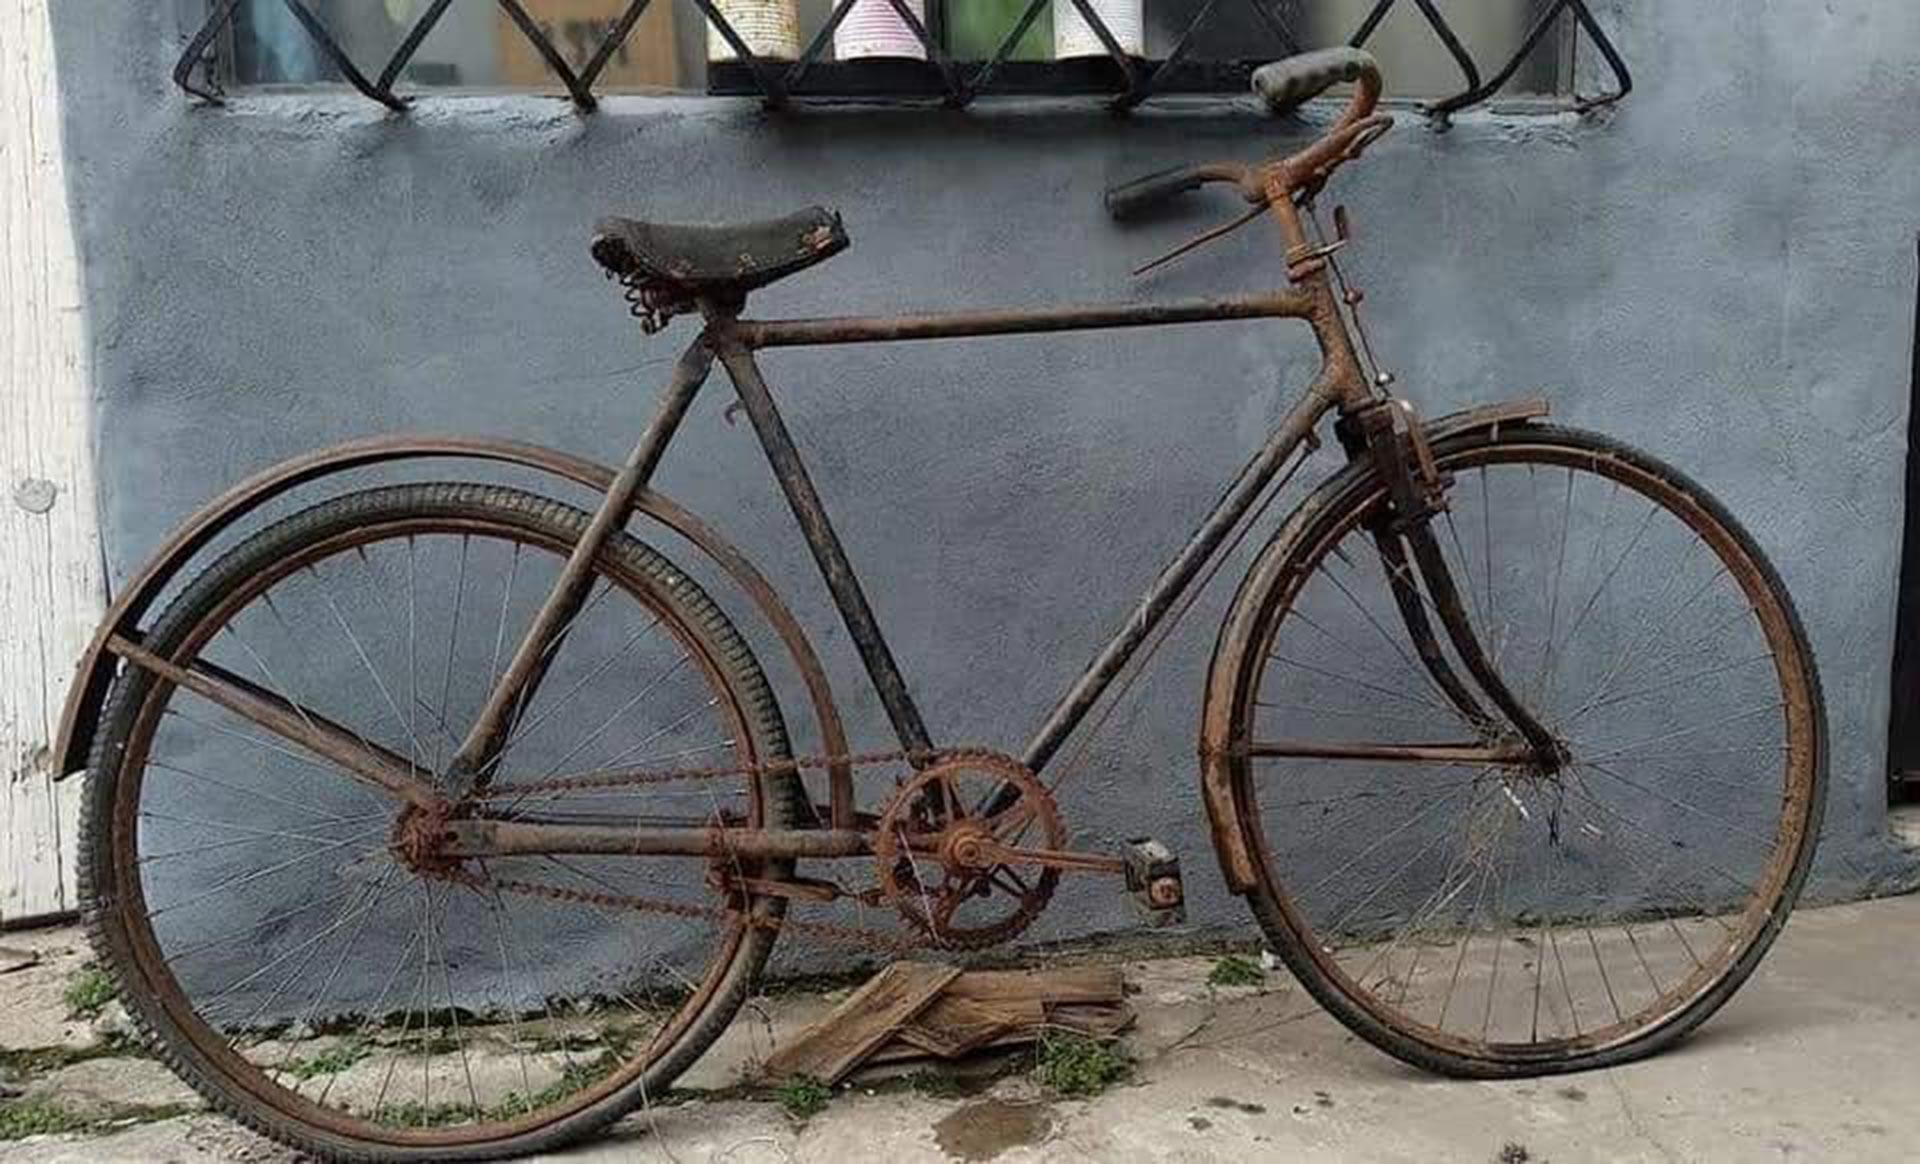 Primera-foto-de-la-bici,-oxidada-y-llena-de-tierra